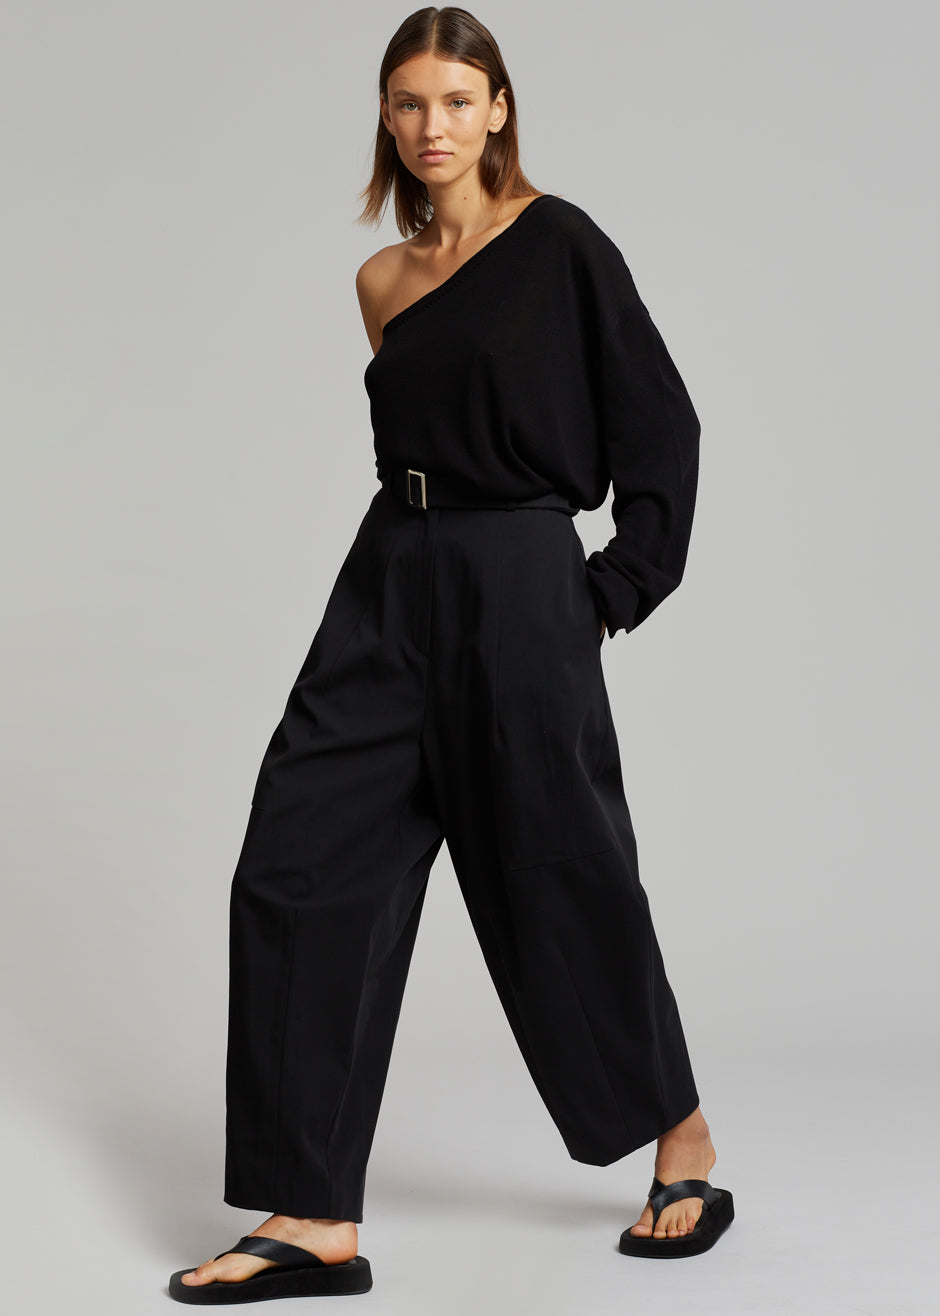 Bianca One Shoulder Loose Knit Top - Black – The Frankie Shop